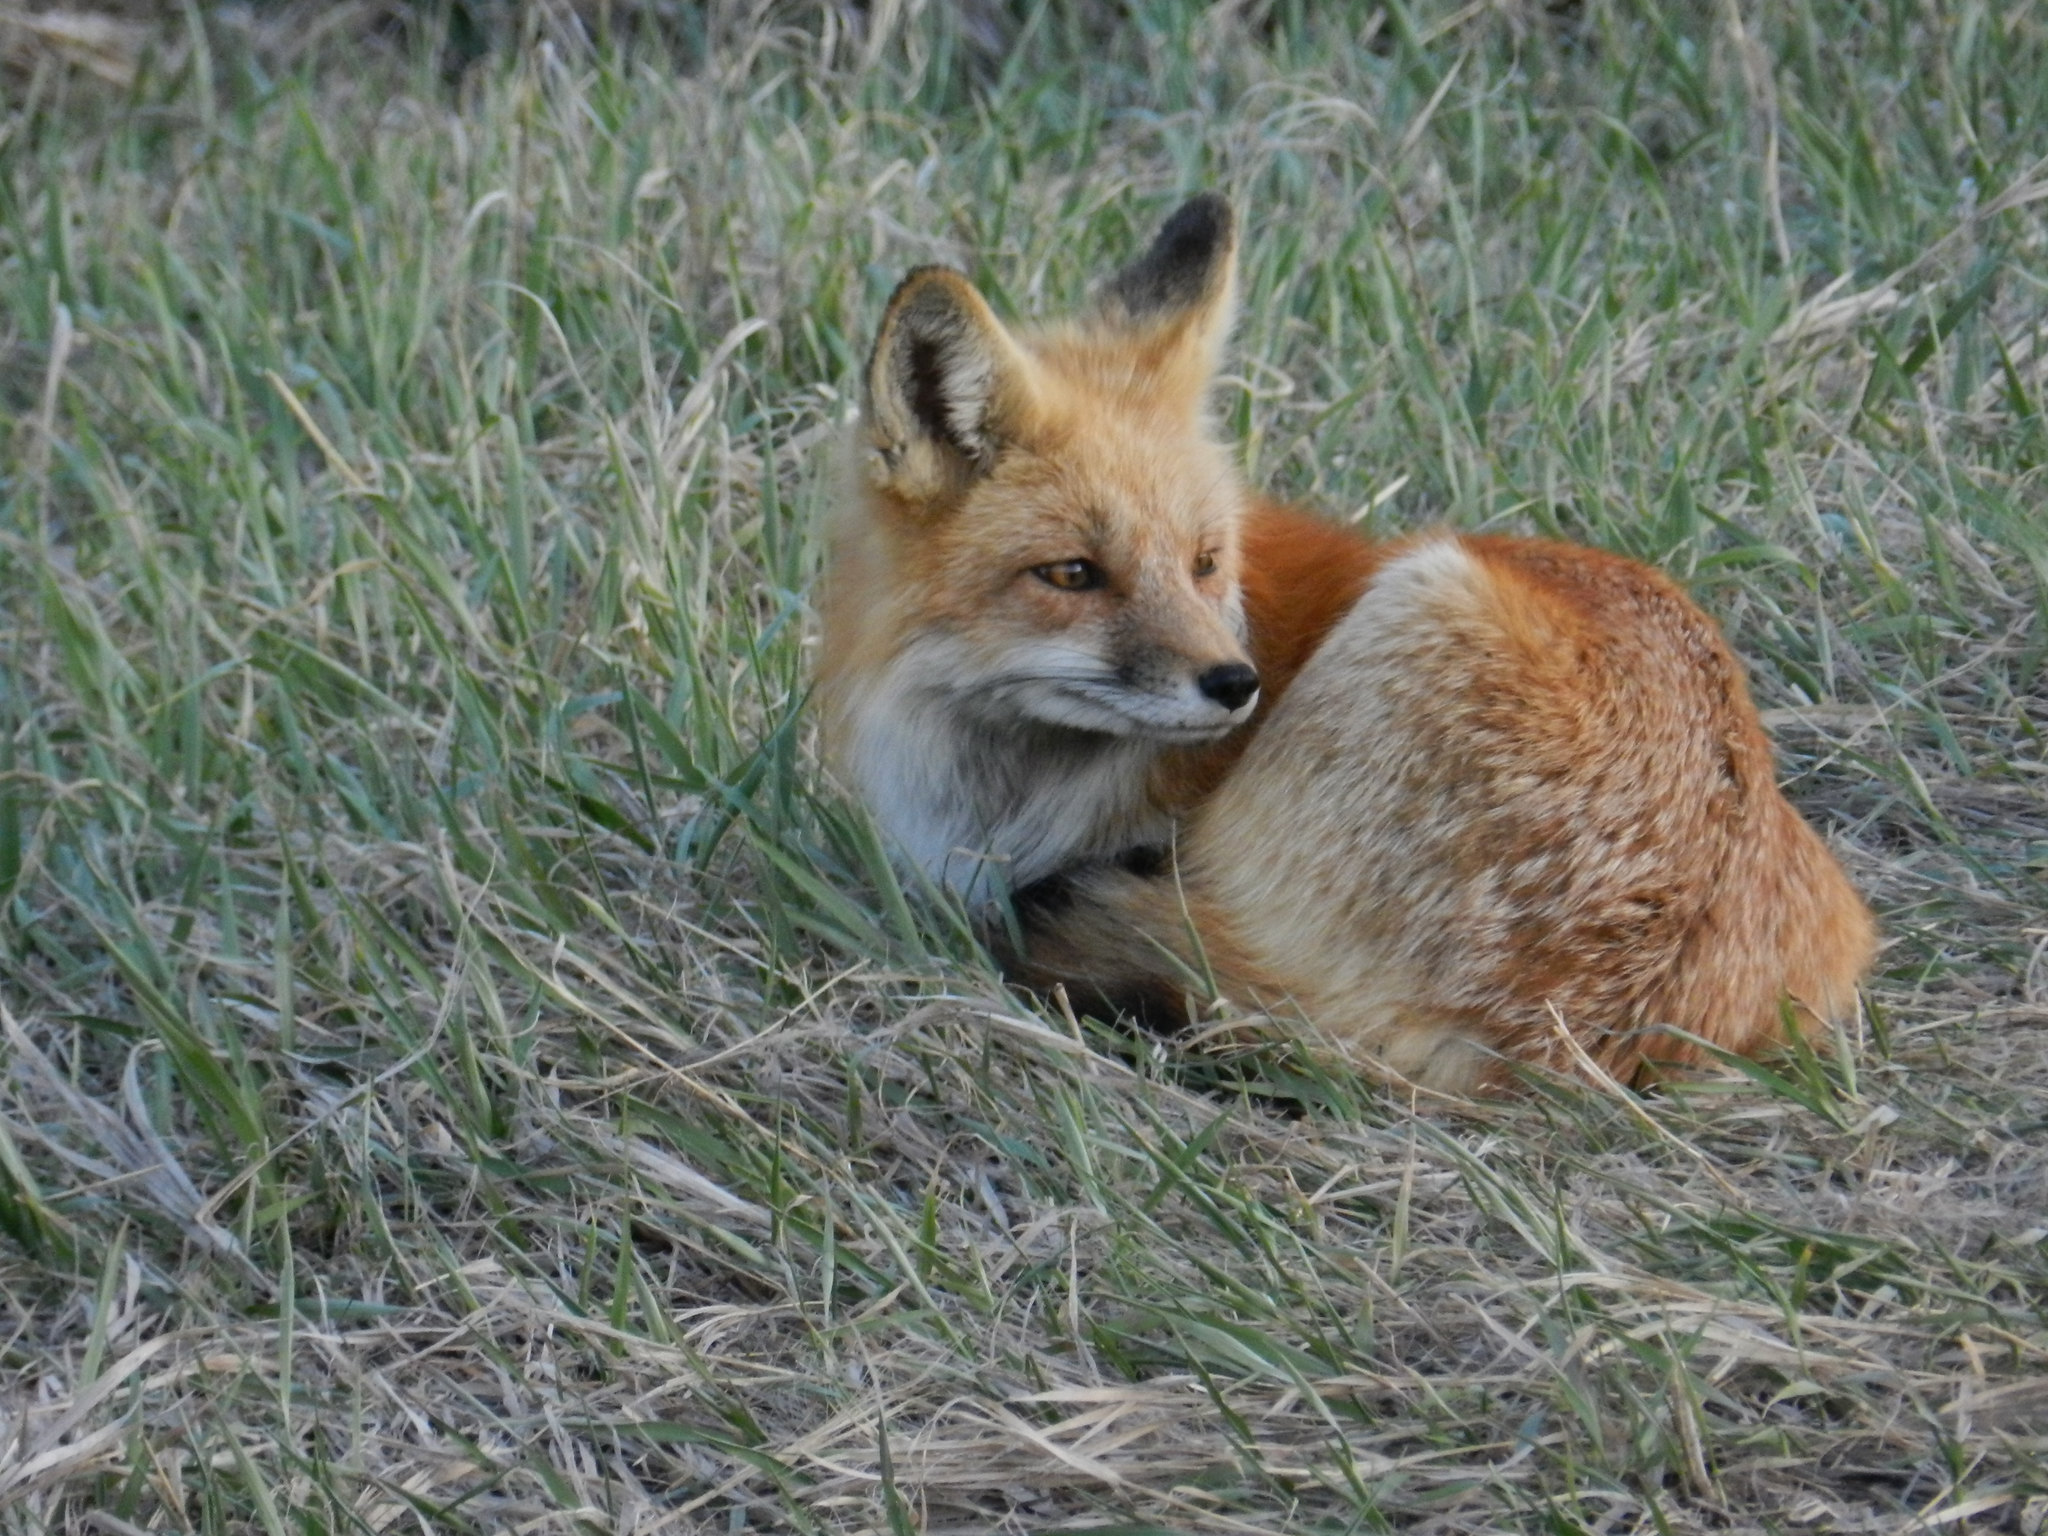 Two red foxes died of avian flu in Utah.